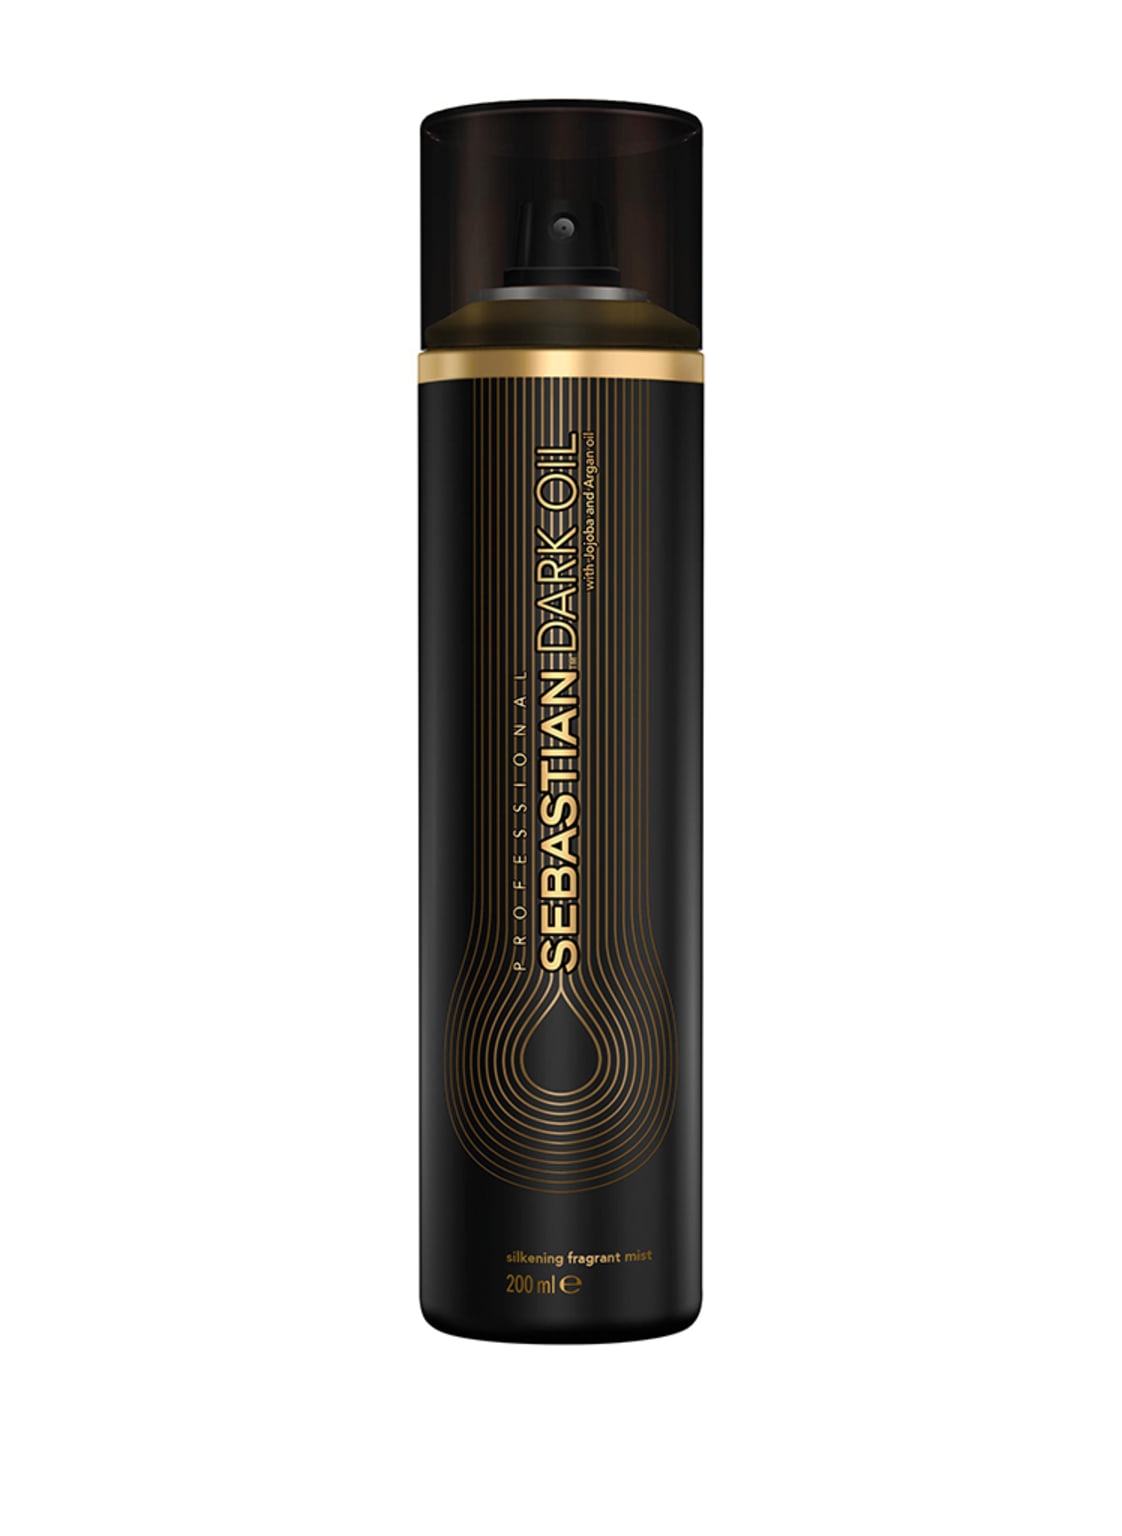 Sebastian Dark Oil Silkening Fragrant Mist 200 ml von SEBASTIAN